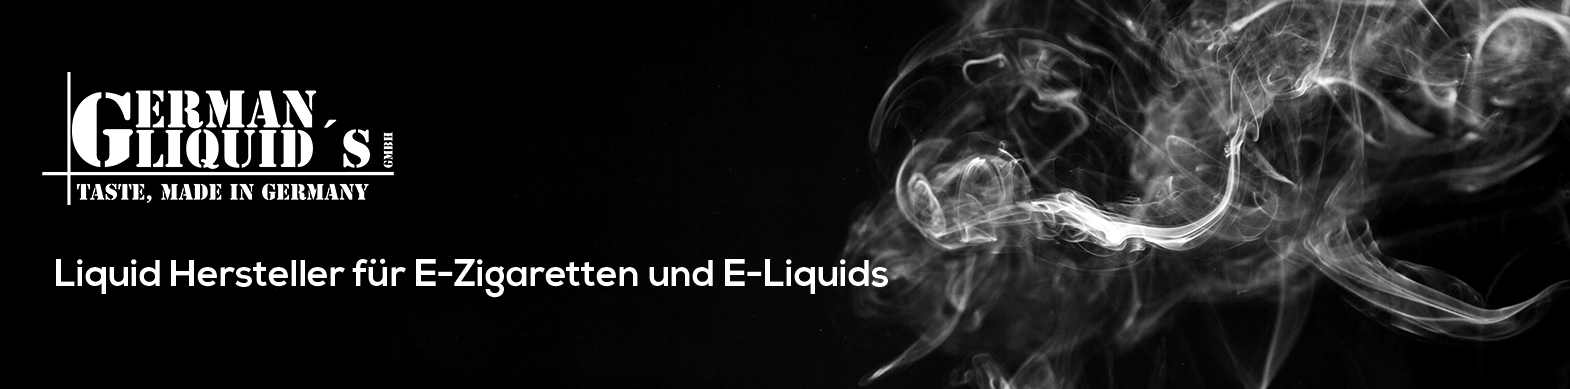 Germanliquids-Slider-Webseiteneu1